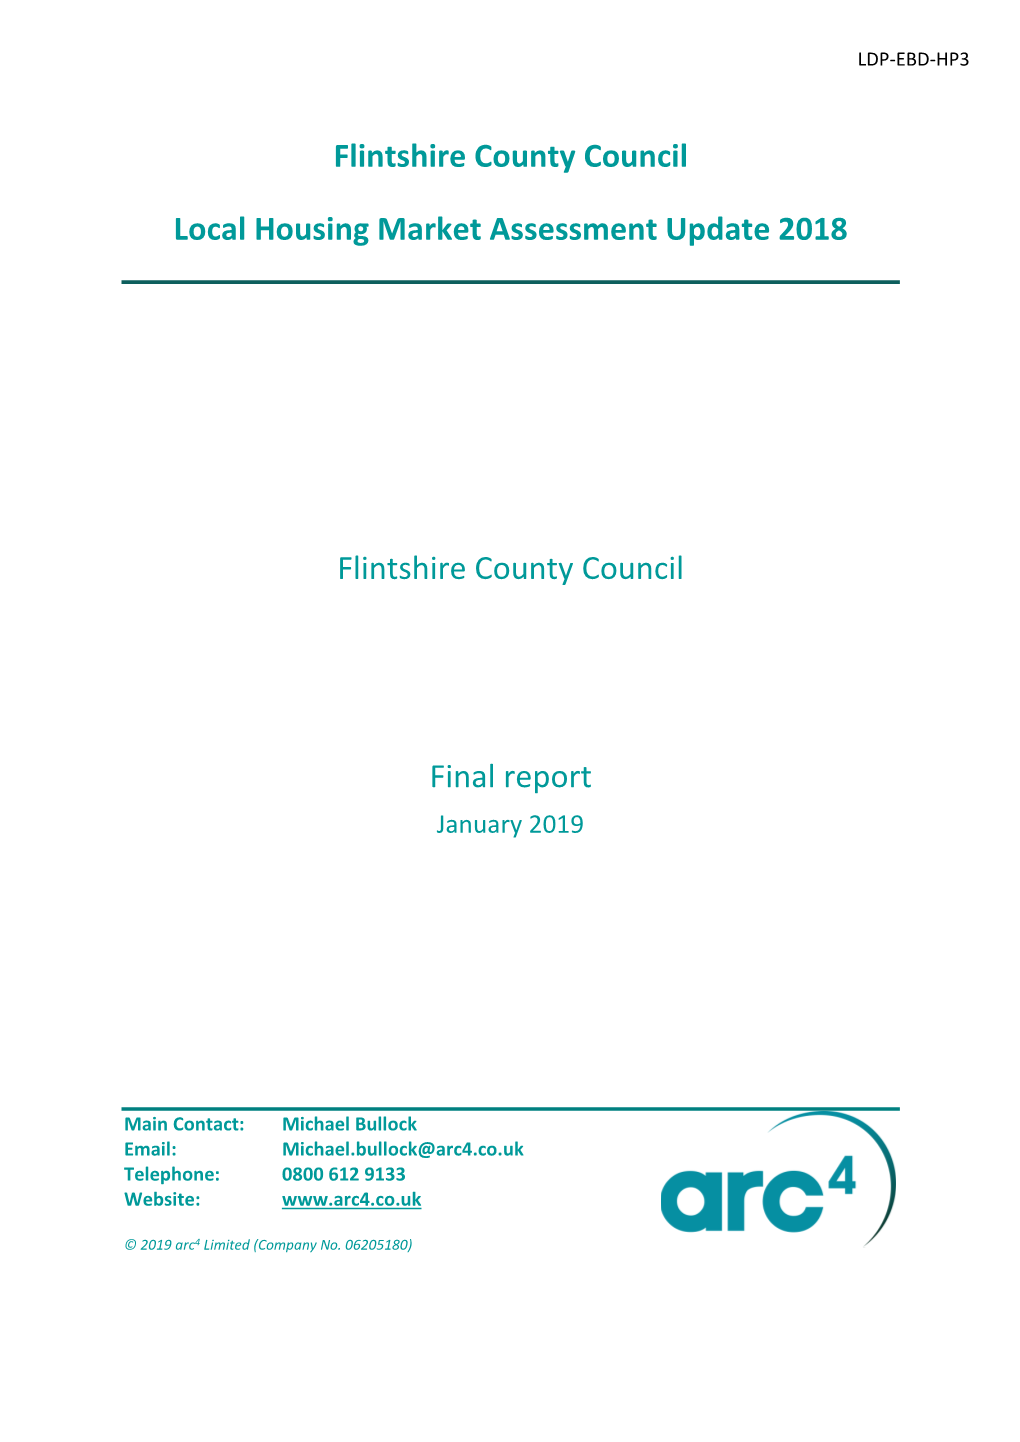 LDP-EBD-HP3 Local Housing Market Assessment Update